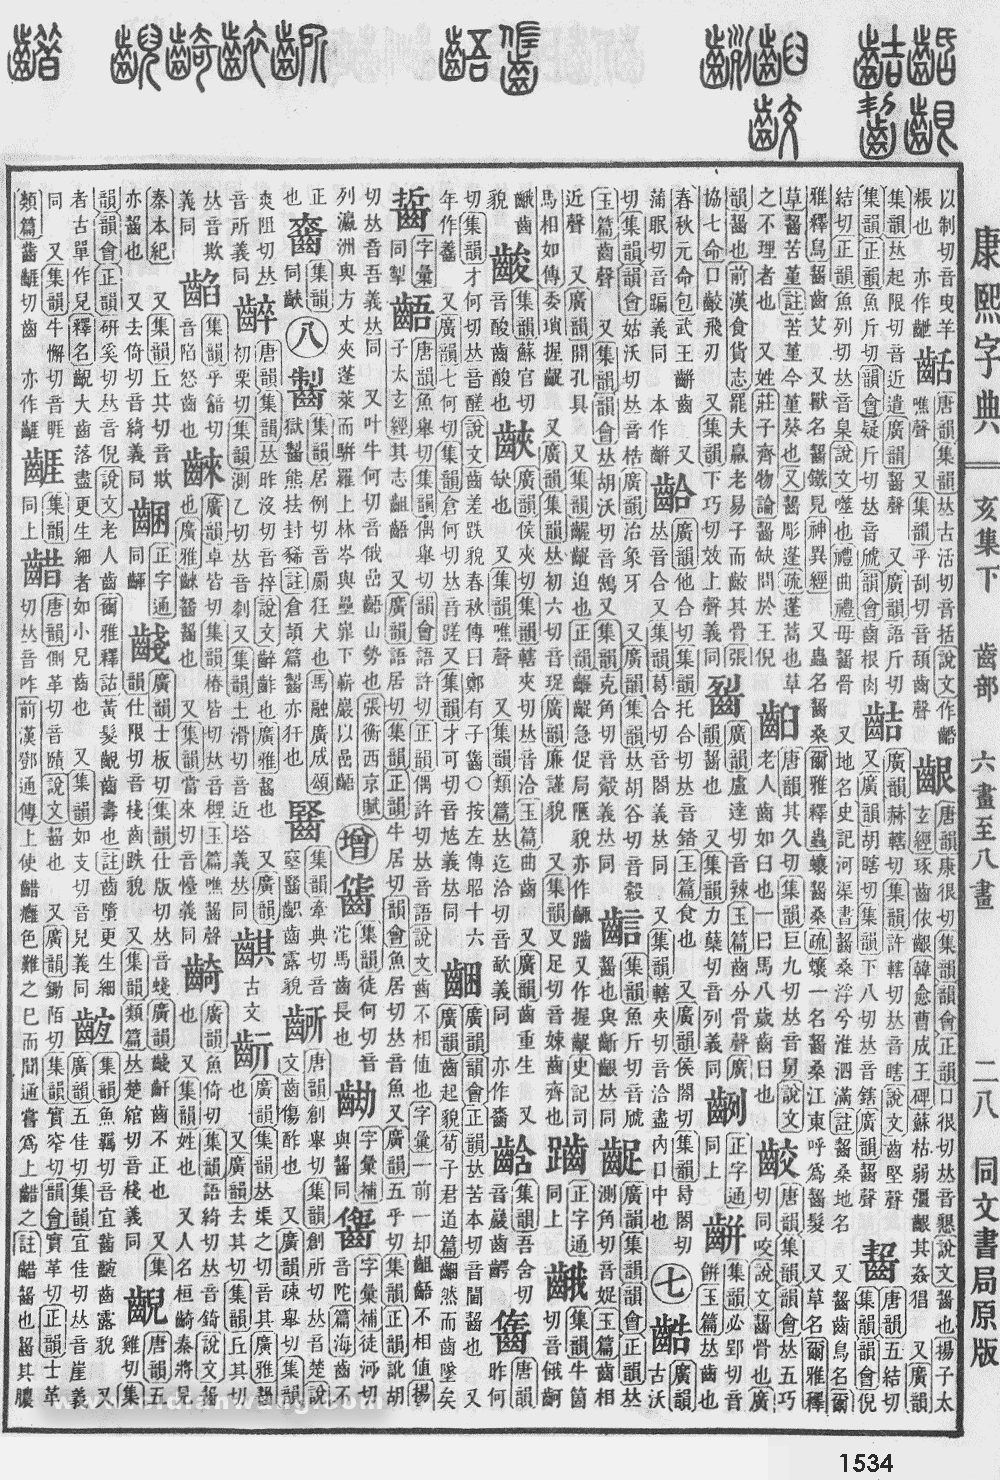 康熙字典掃描版第1534頁